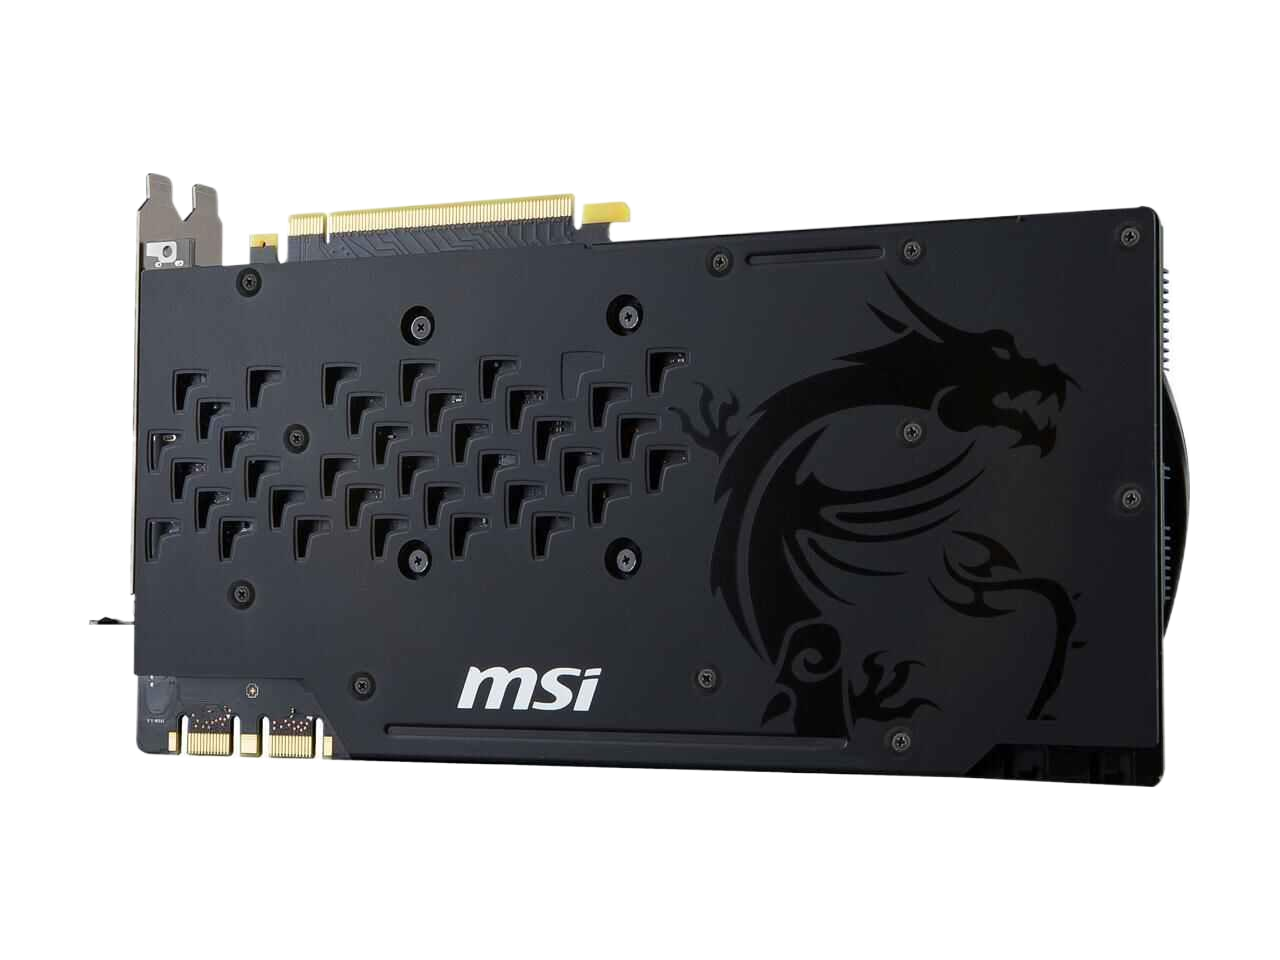 MSI GeForce GTX 1070 GAMING X 8GB GDDR5 PCI Express 3.0 x16 SLI Support ATX Video Card